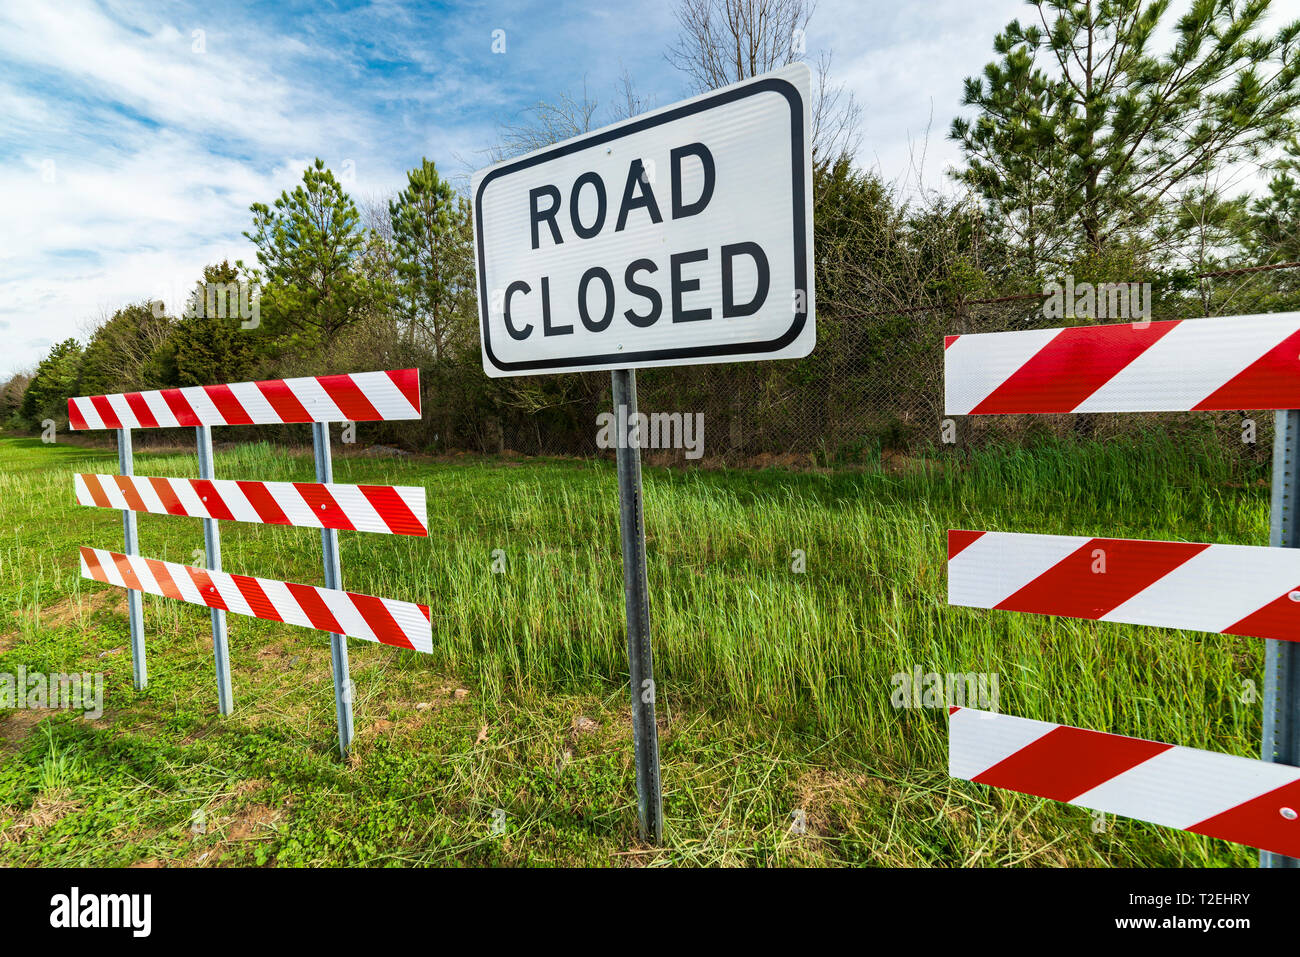 Angle horizontal de rouge et blanc à rayures avec des obstacles d'une route signe clos au milieu d'eux dans une région boisée. Banque D'Images